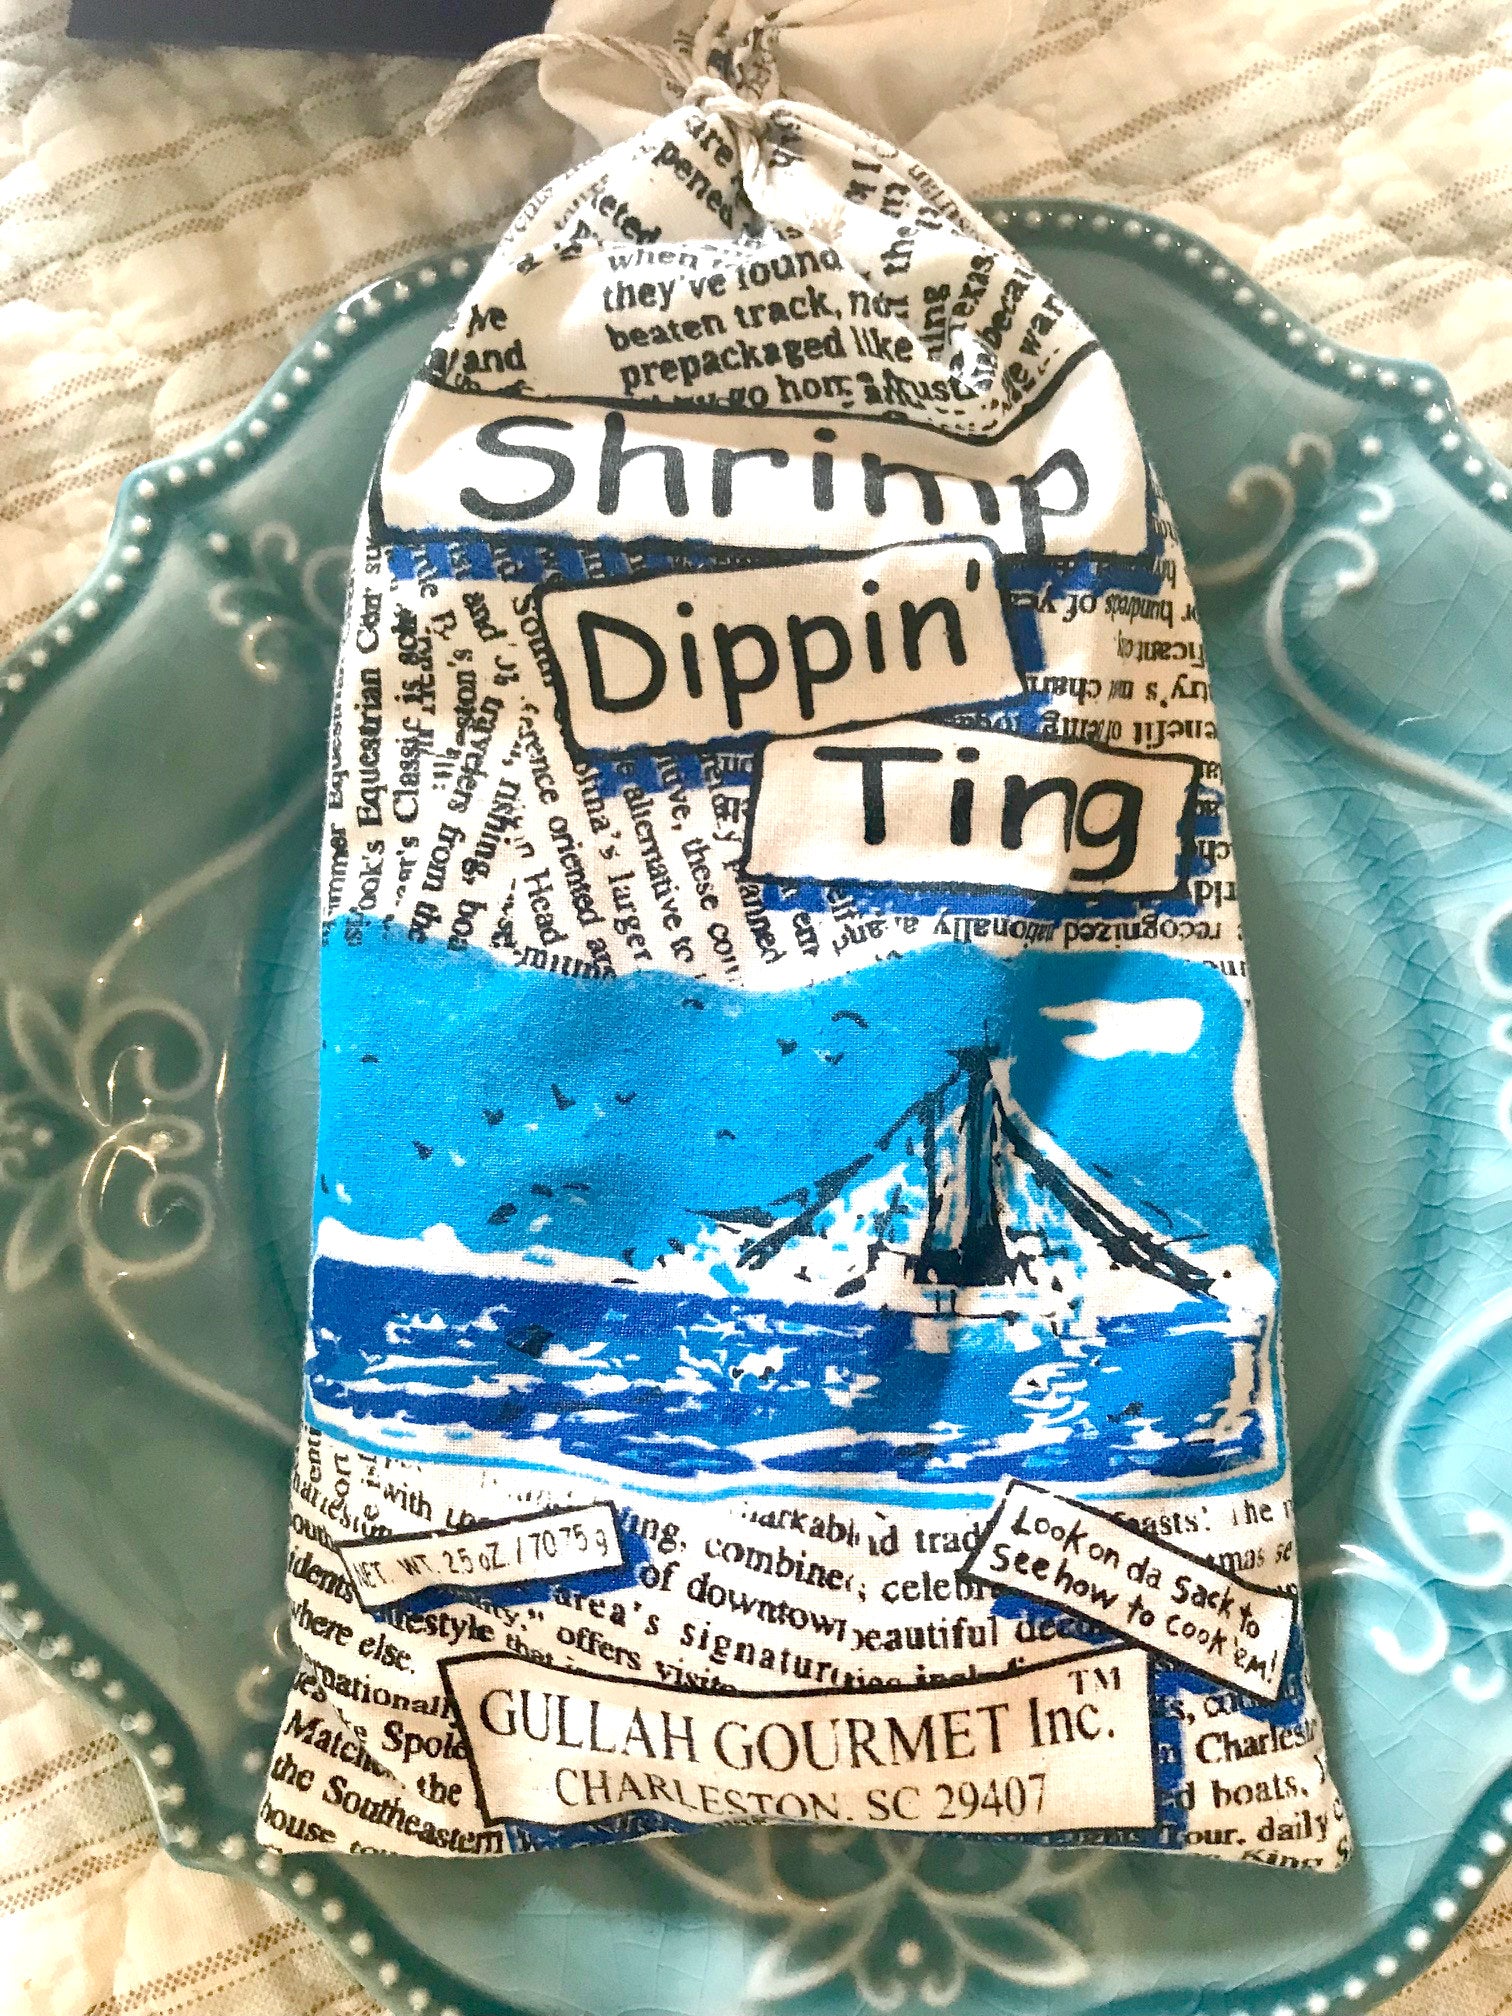 Shrimp Dippin' Ting